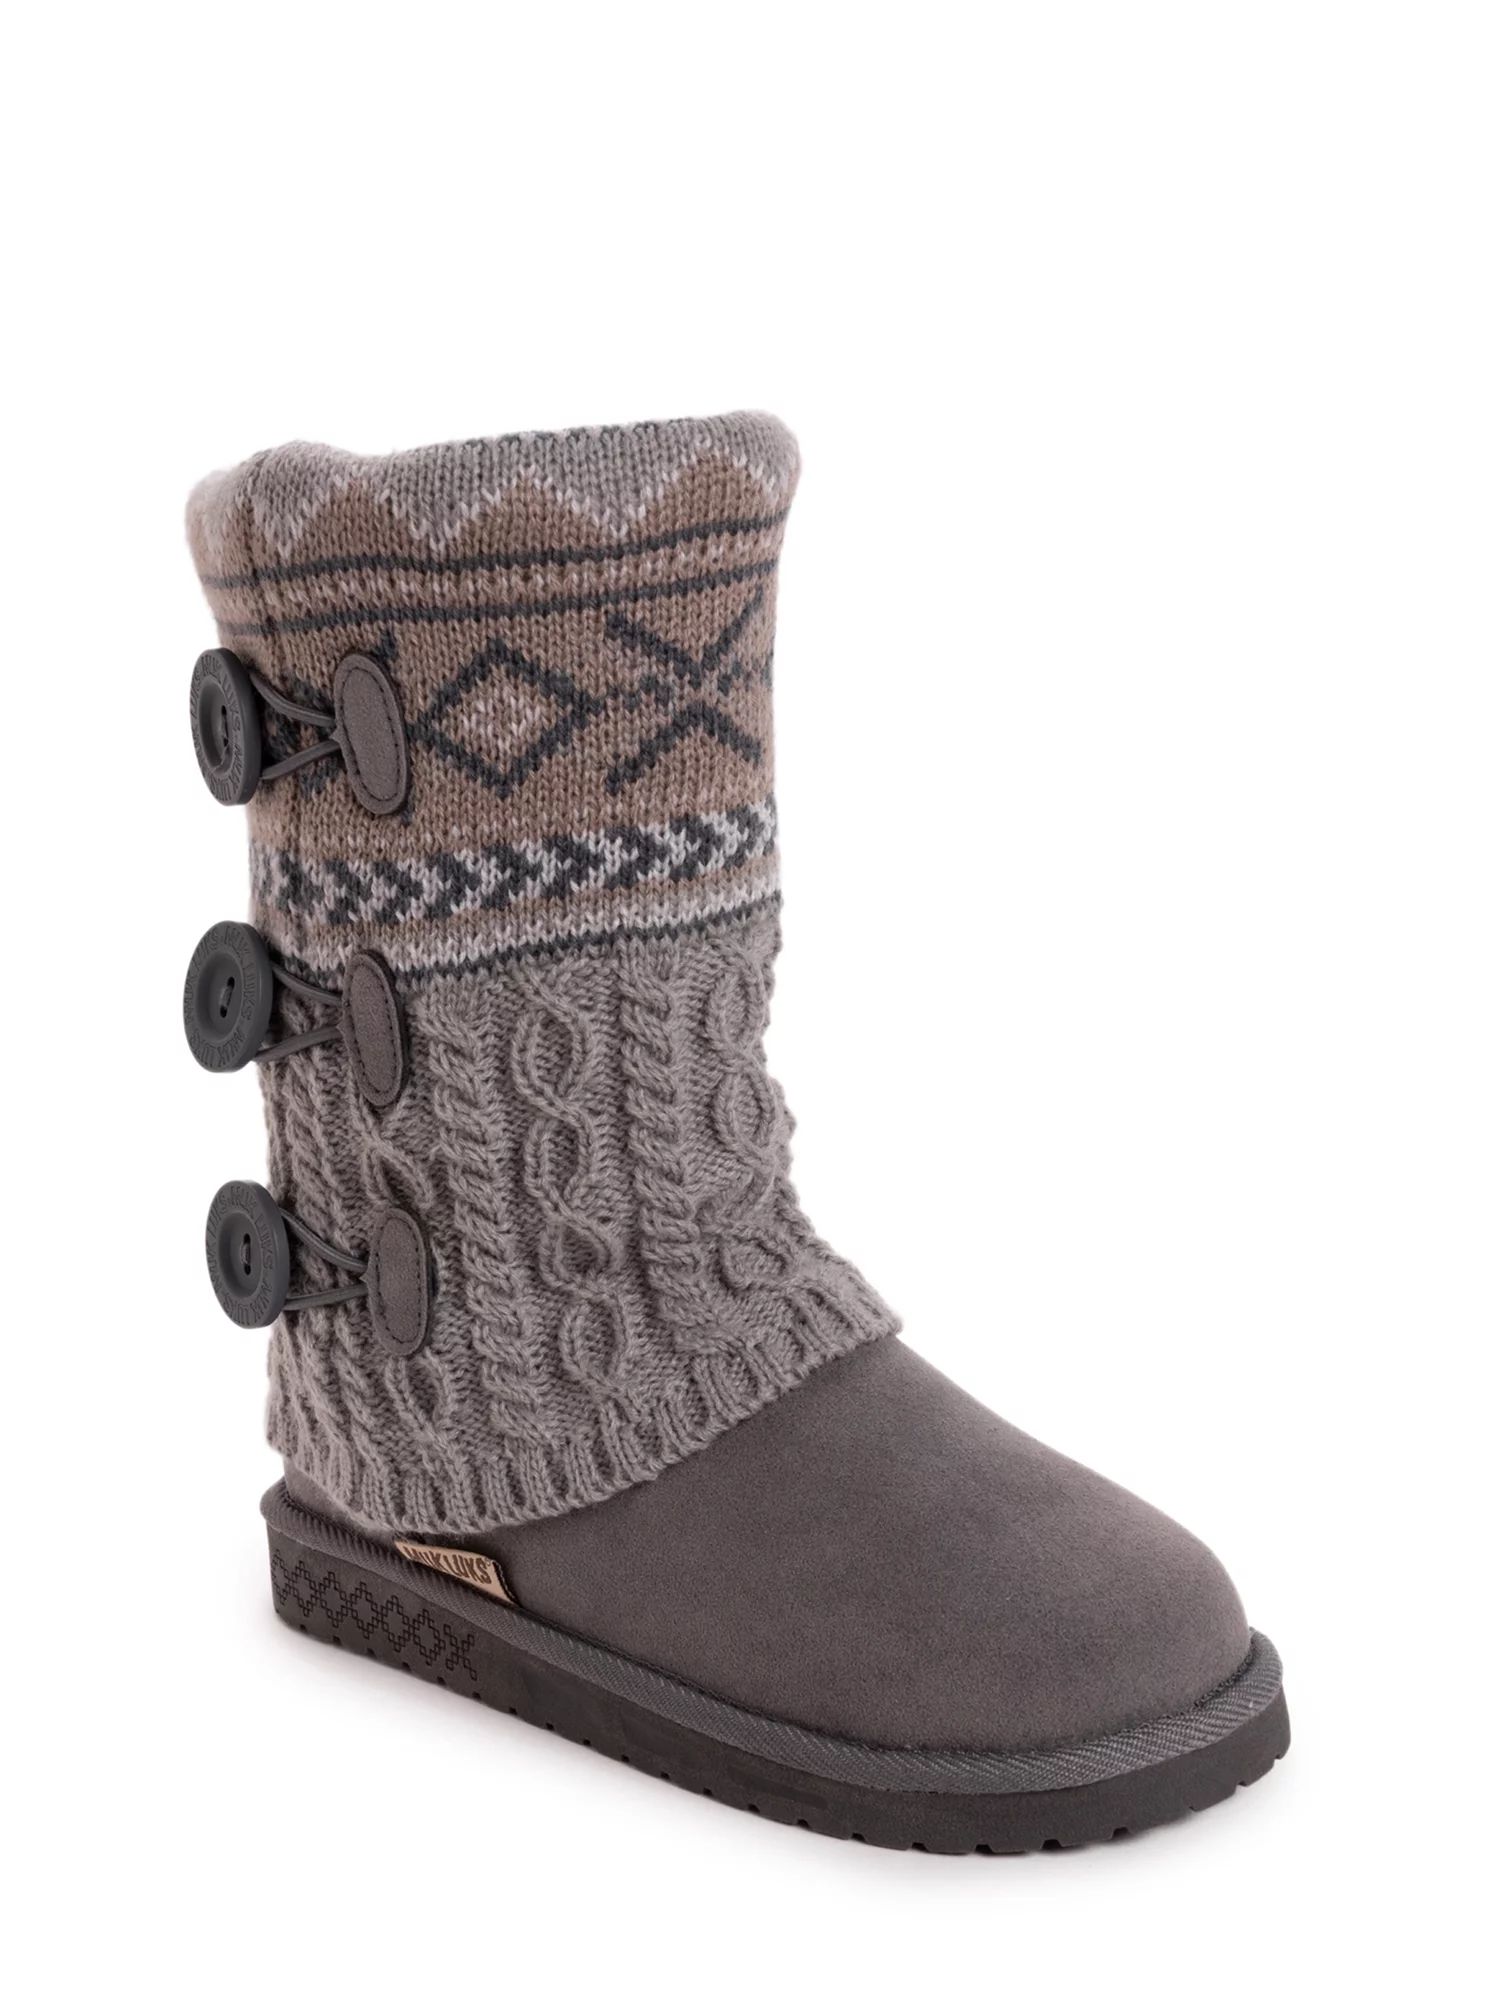 Muk Luks Cheryl Faux Fur Lined Side Button Pattern Knit Boot (Women's) | Walmart (US)